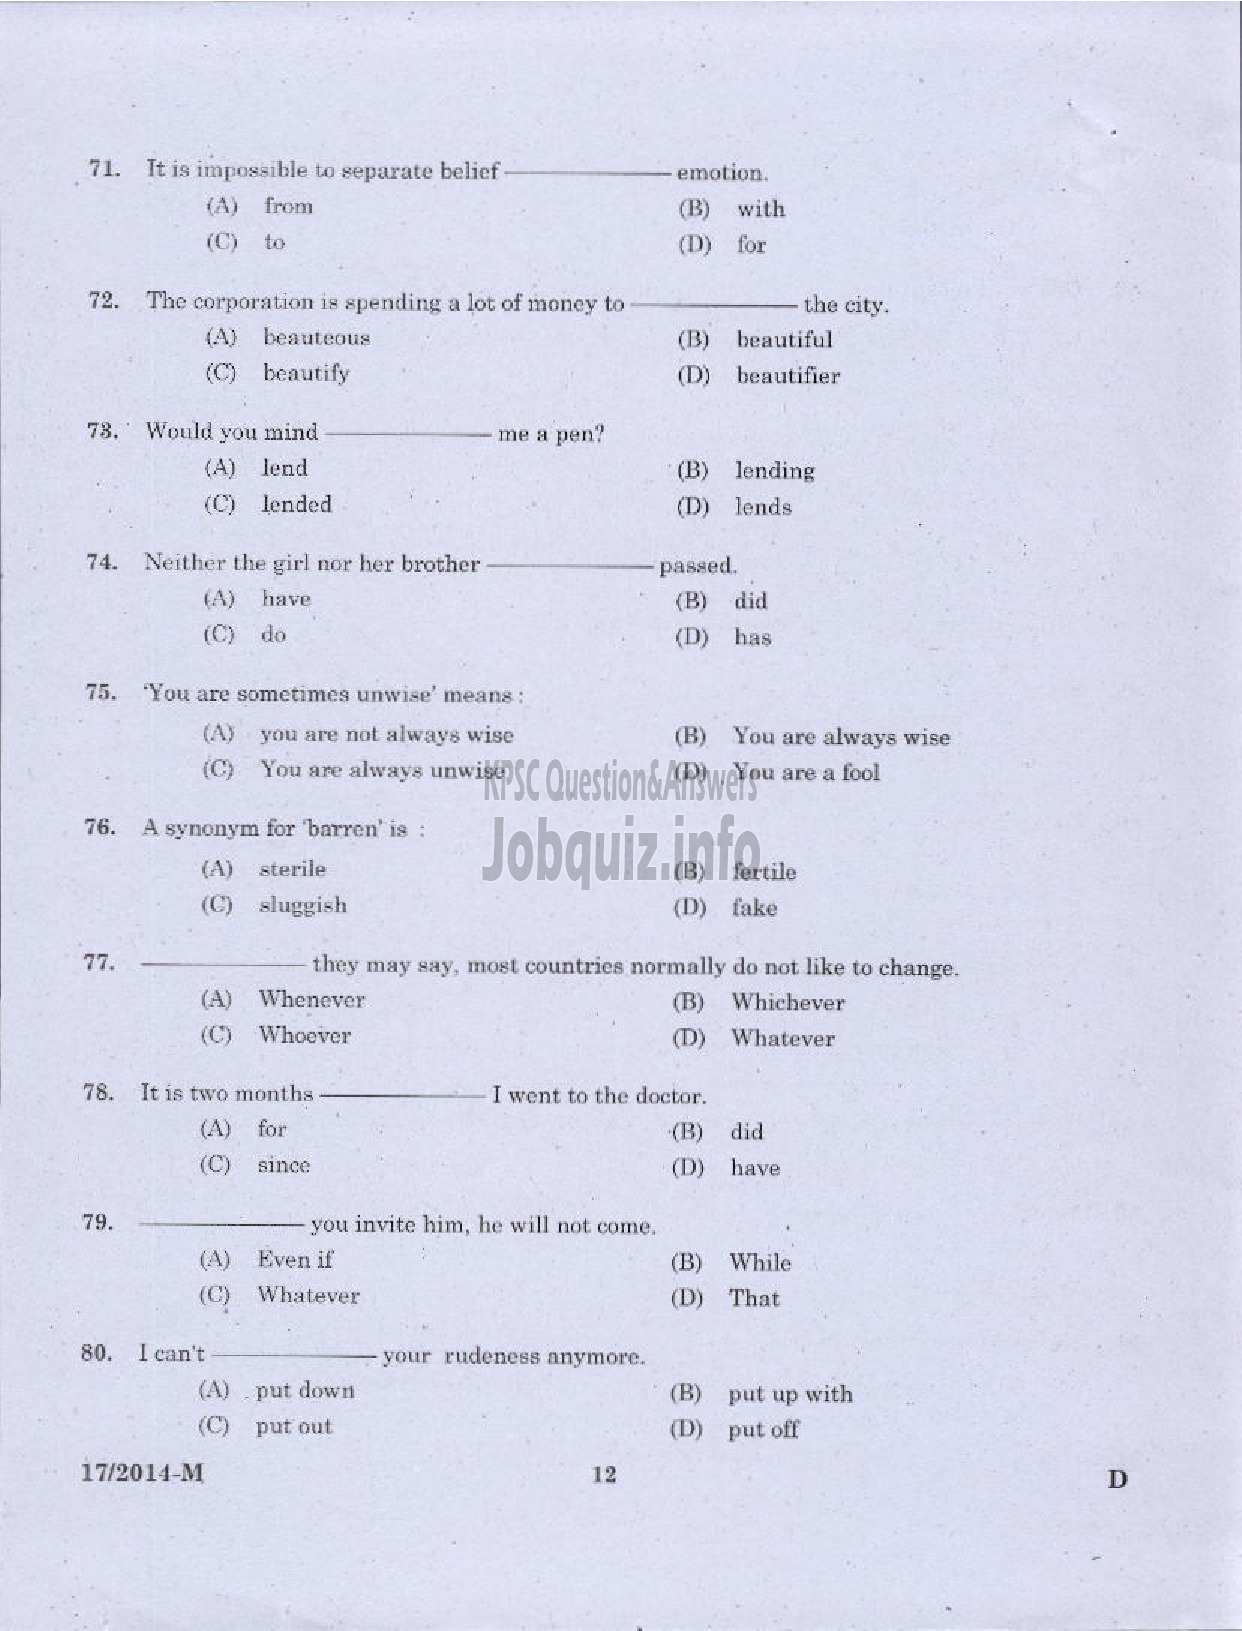 Kerala PSC Question Paper - LDC VARIOUS 2014 PALAKKAD ( Malayalam ) -10